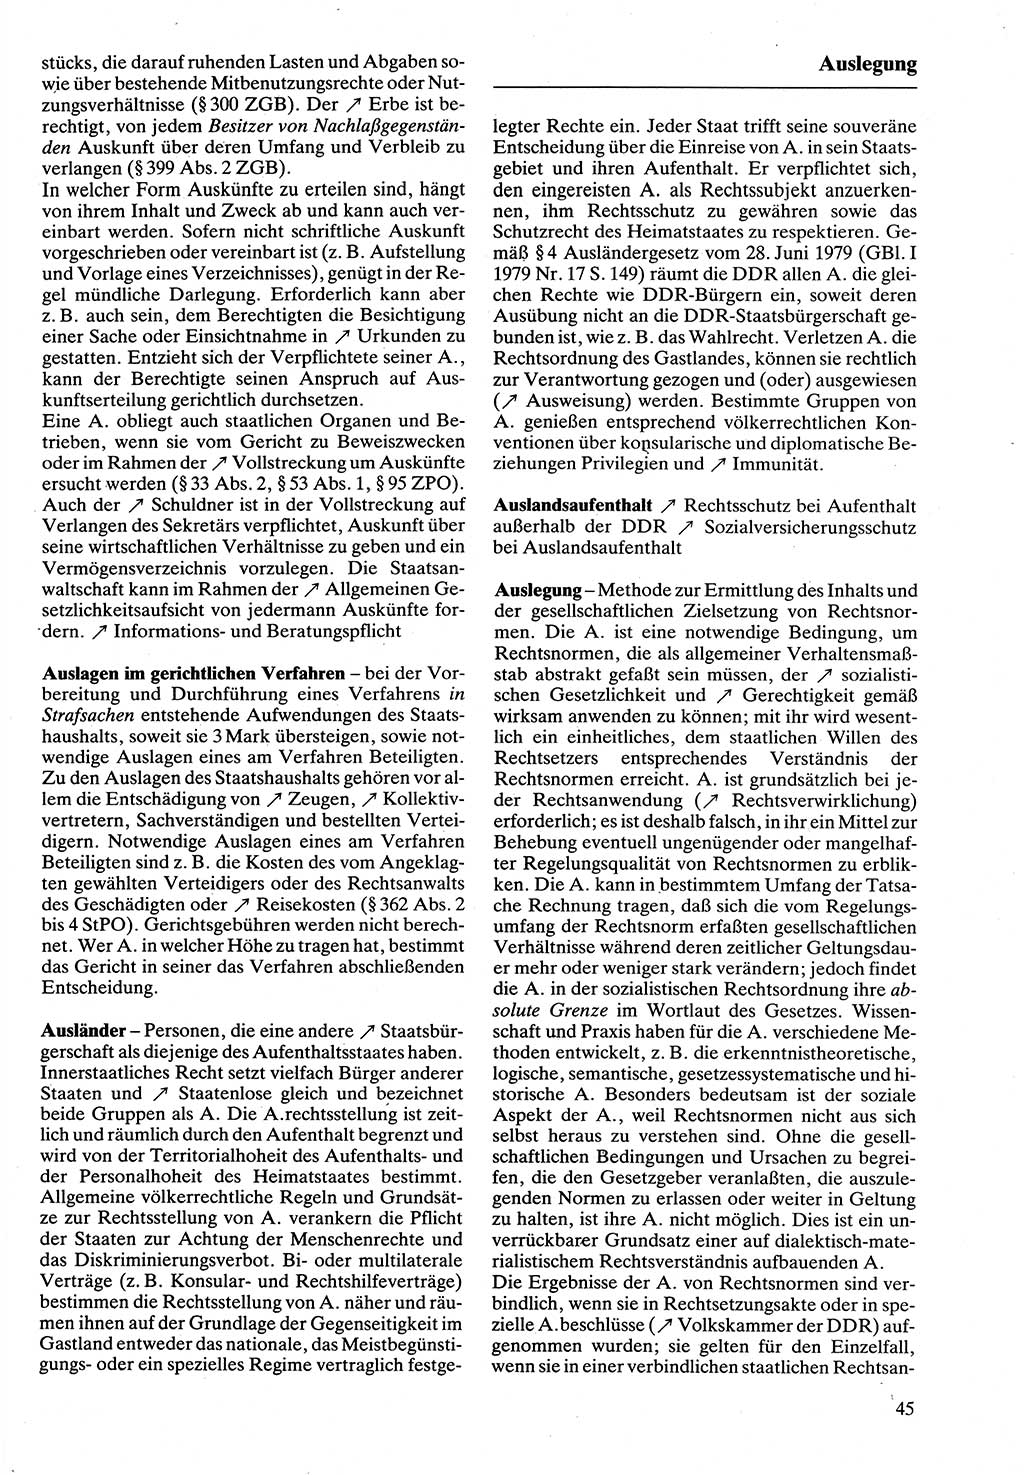 Rechtslexikon [Deutsche Demokratische Republik (DDR)] 1988, Seite 45 (Rechtslex. DDR 1988, S. 45)